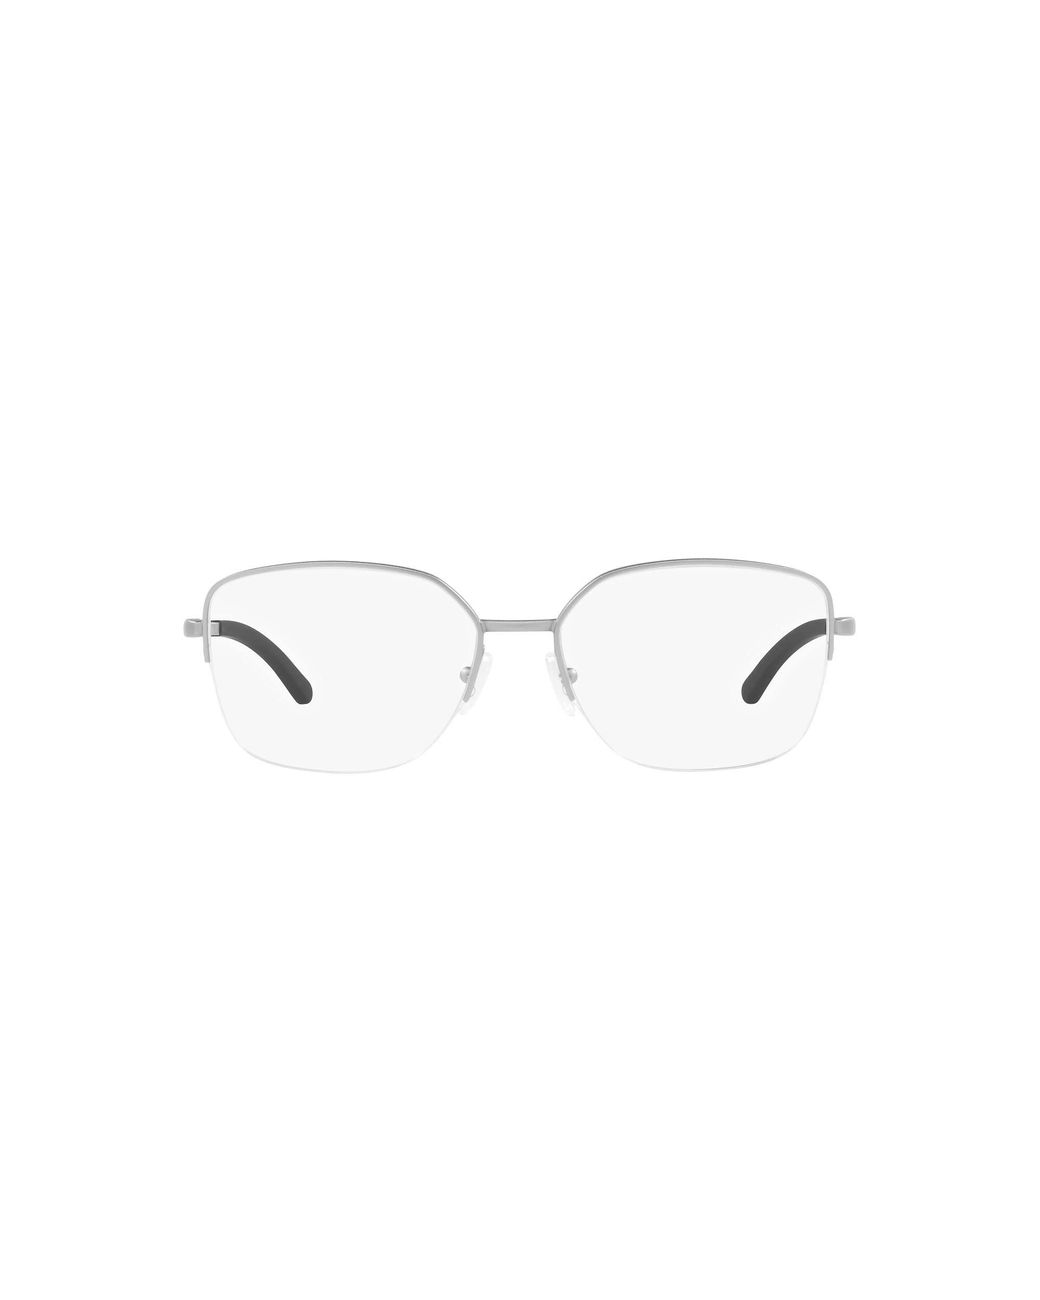 Oakley Ox3006 Moonglow Rectangular Prescription Eyewear Frames in Black ...